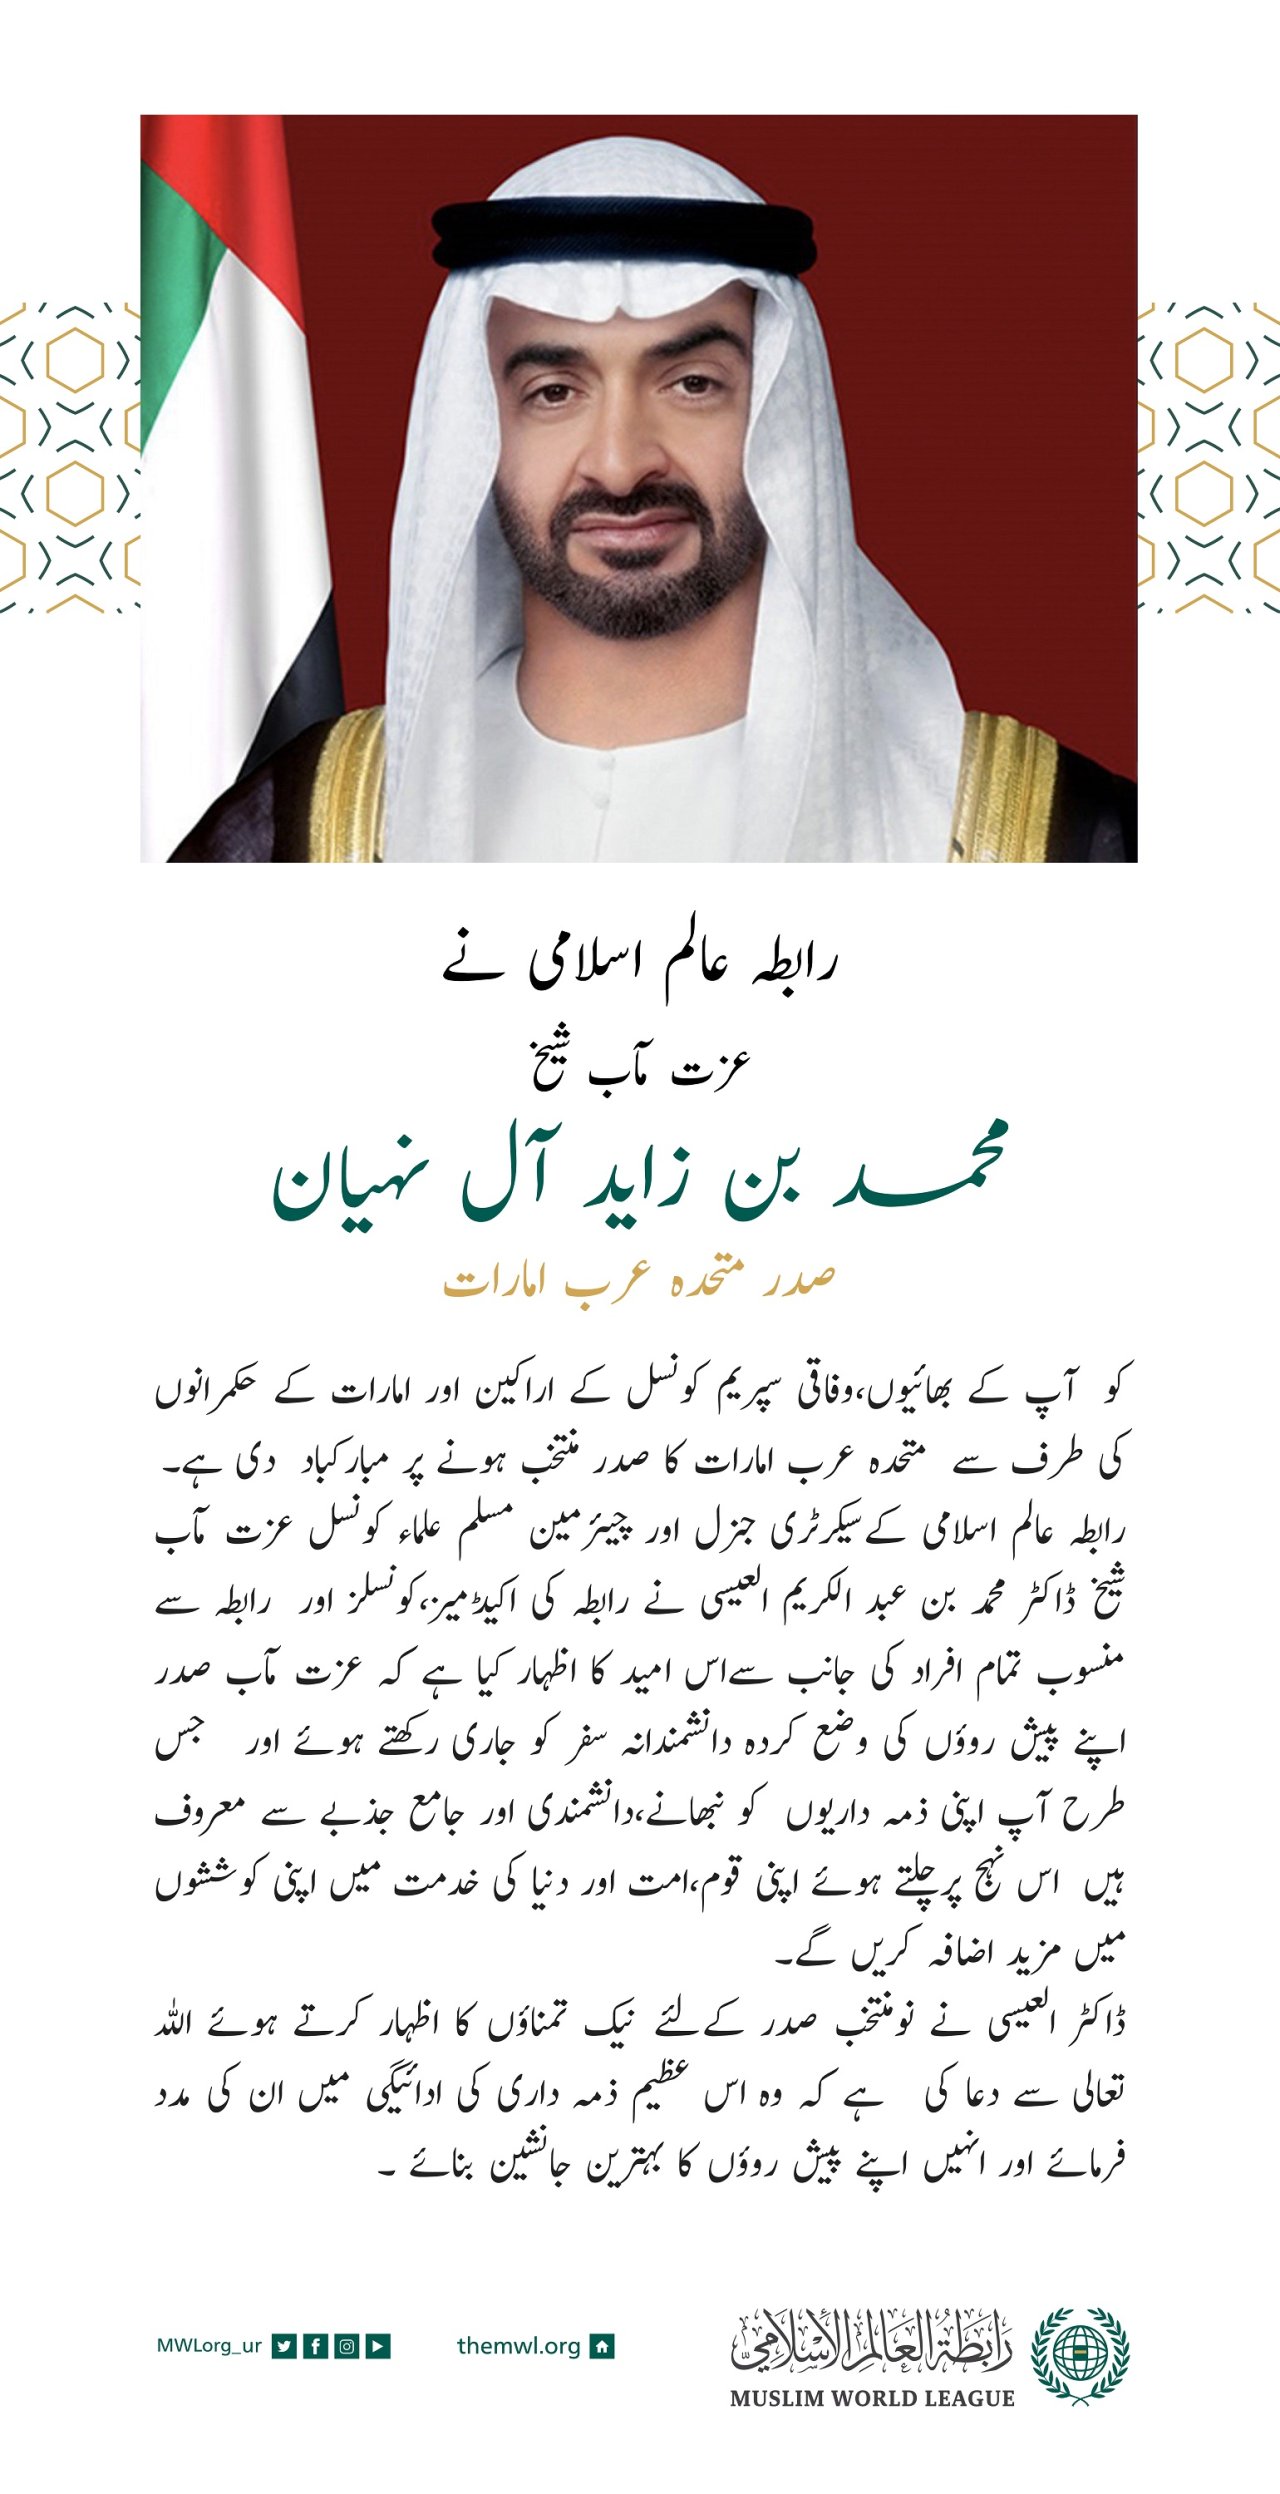 رابطہ عالم اسلامی کی جانب سے عزت مآب شیخ محمد بن زاید آل نہیان کو متحدہ عرب امارات کے صدر منتخب ہونے پر مبارکباد کا پیغام۔